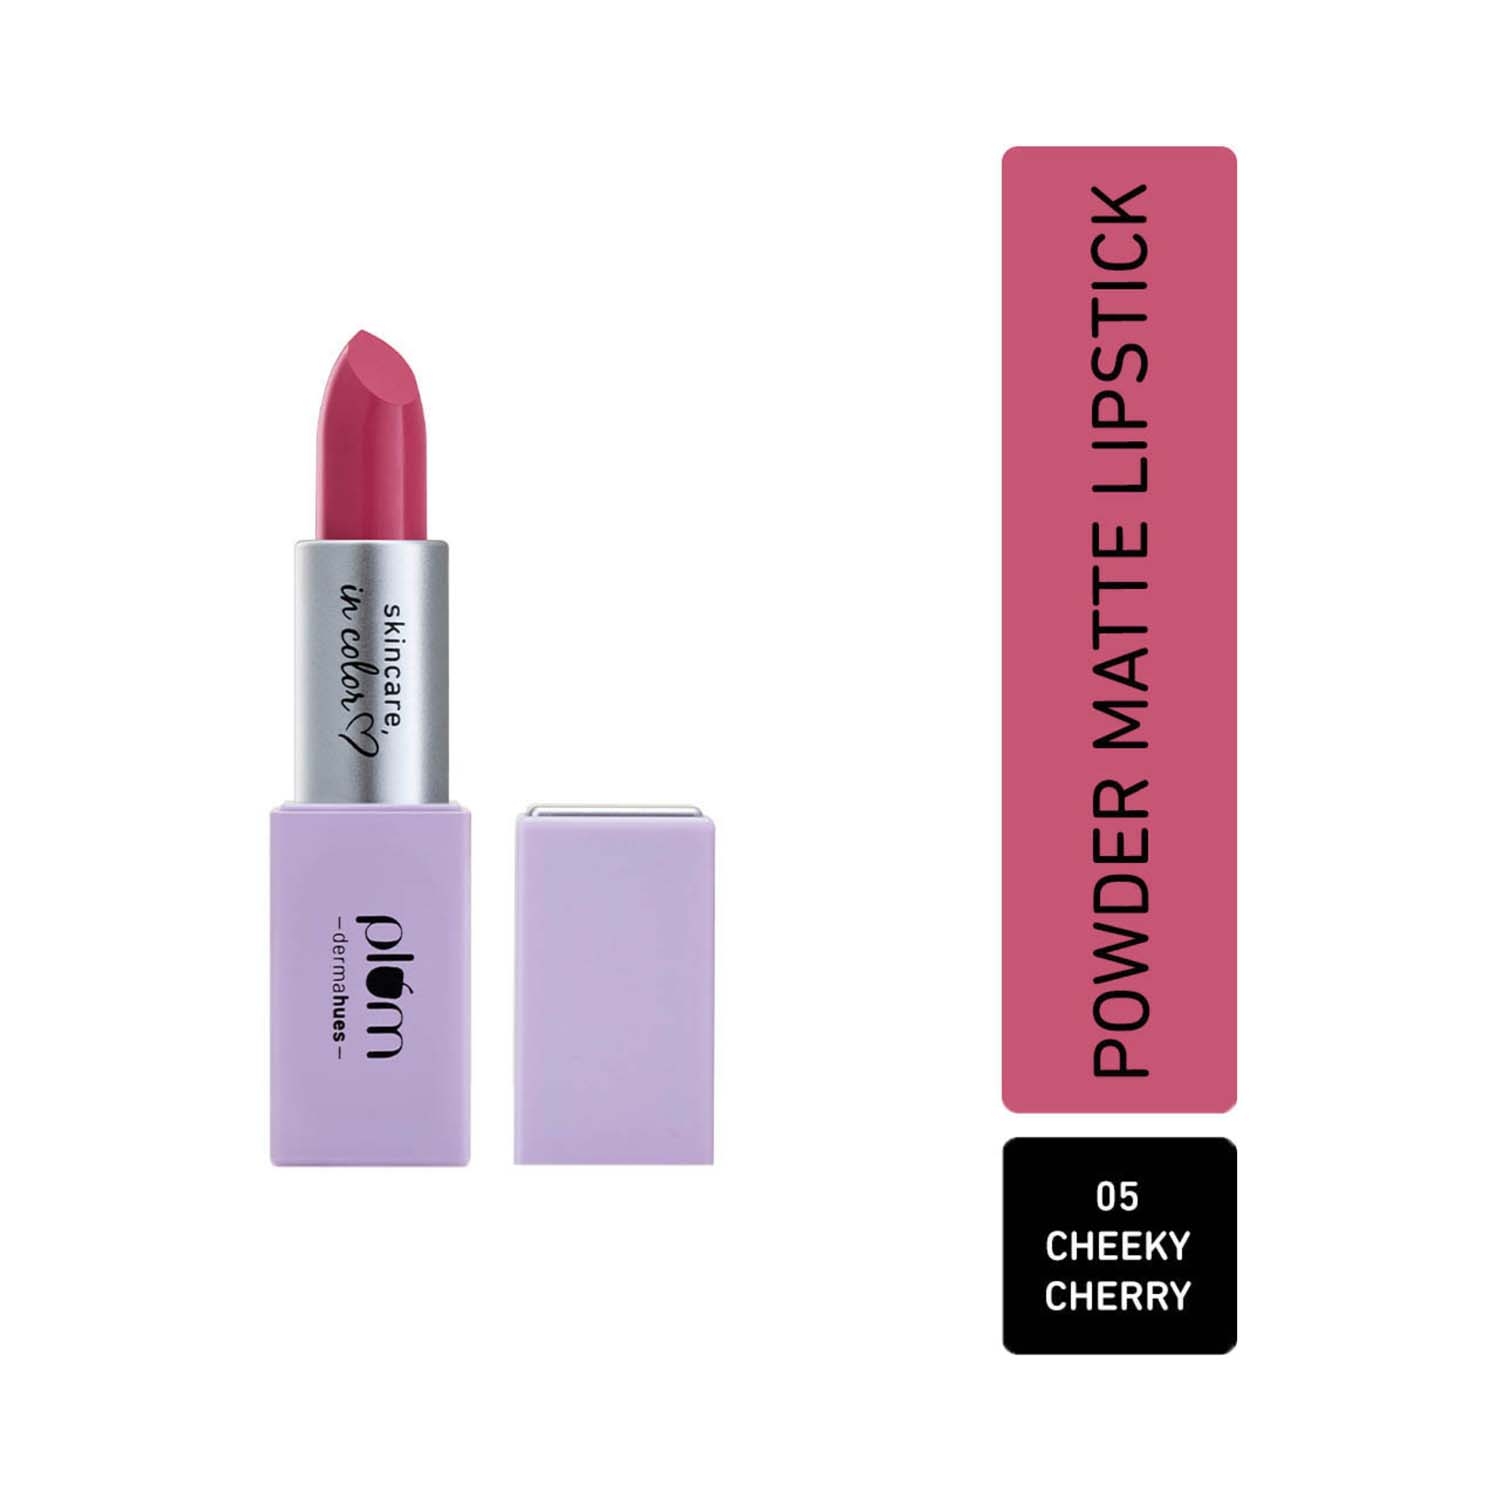 Plum | Plum Velvet Haze Powder Matte Lipstick - 05 Cheeky Cherry (4.2g)